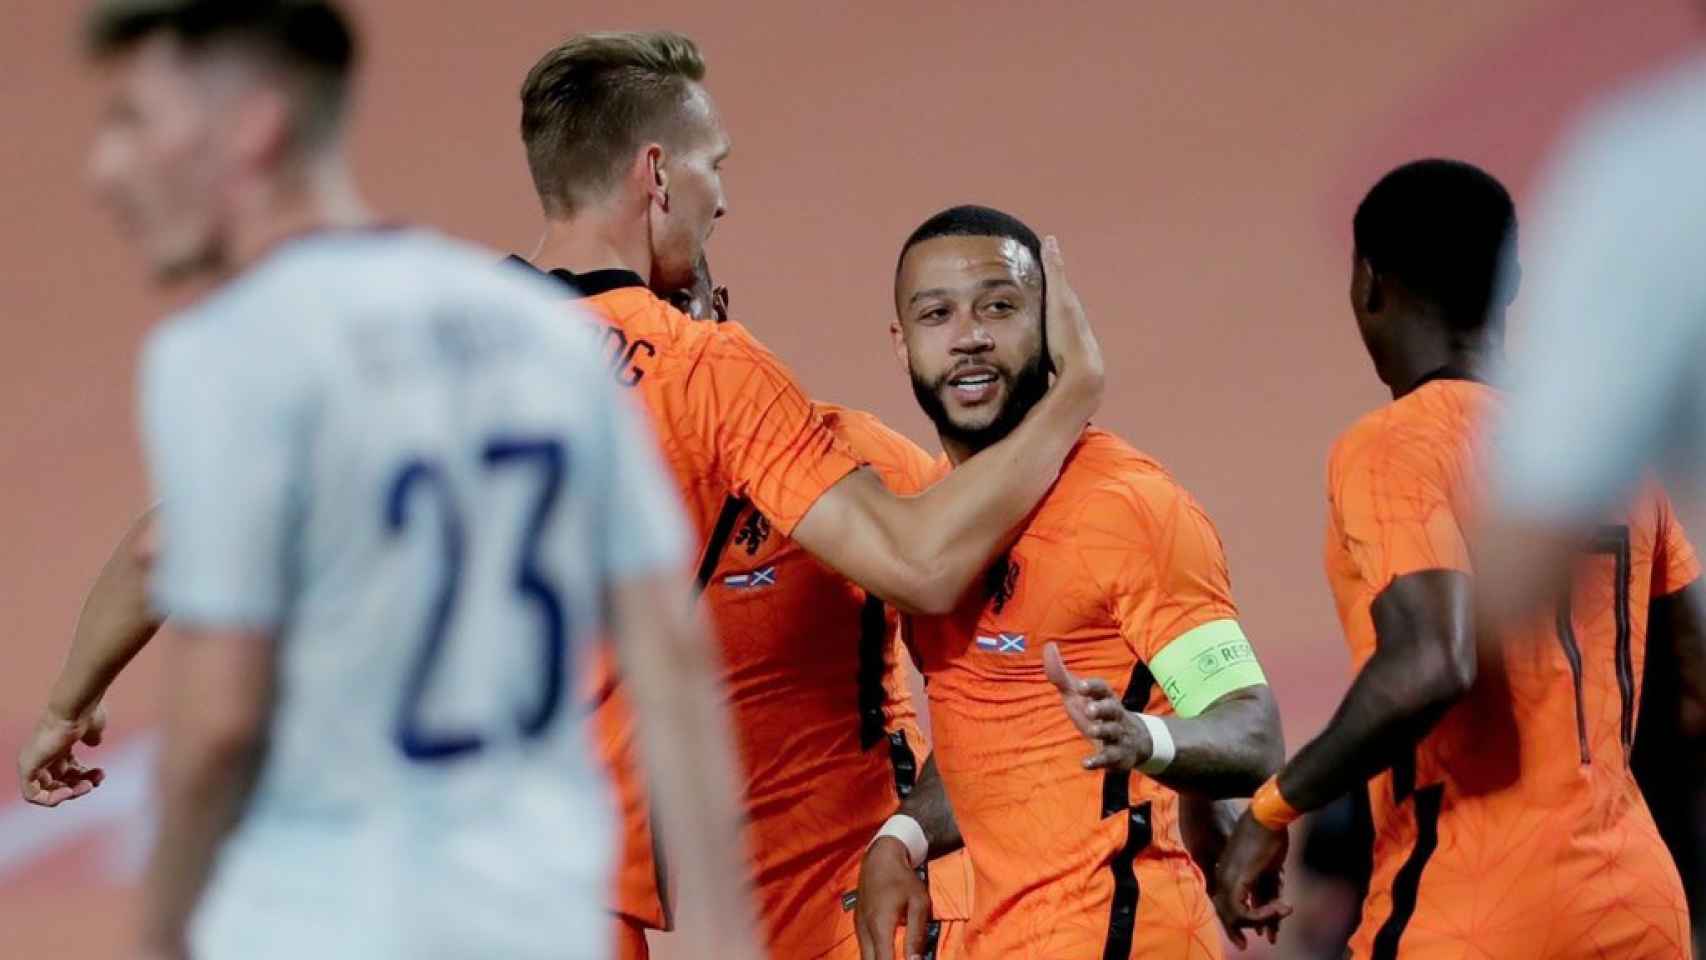 Depay celebrando un gol con Países Bajos / Países Bajos